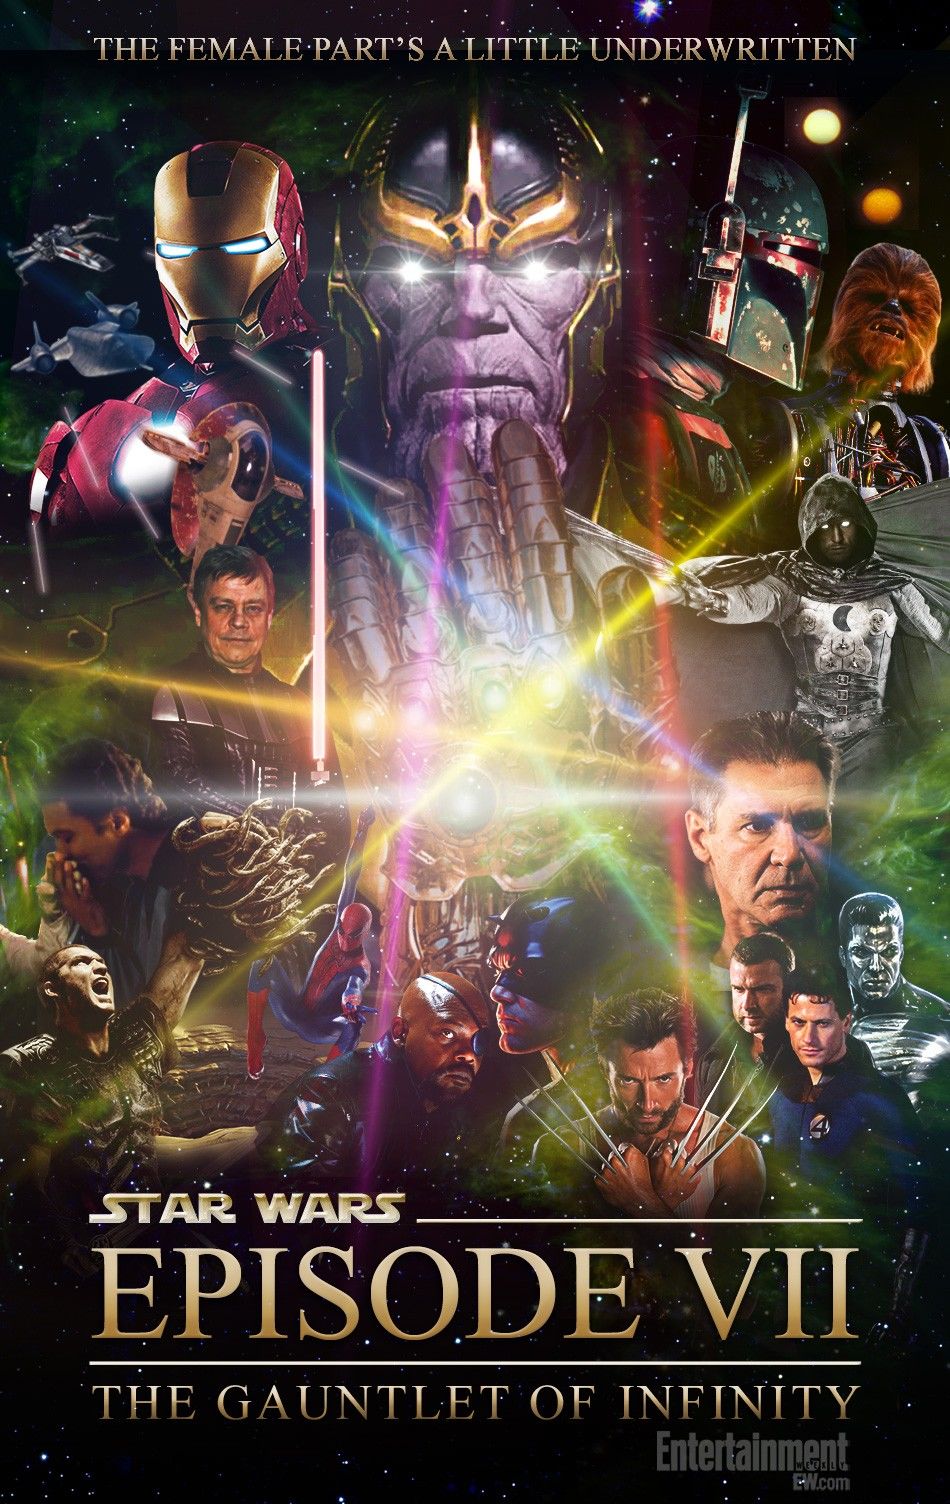 Звёздные войны: Пробуждение силы